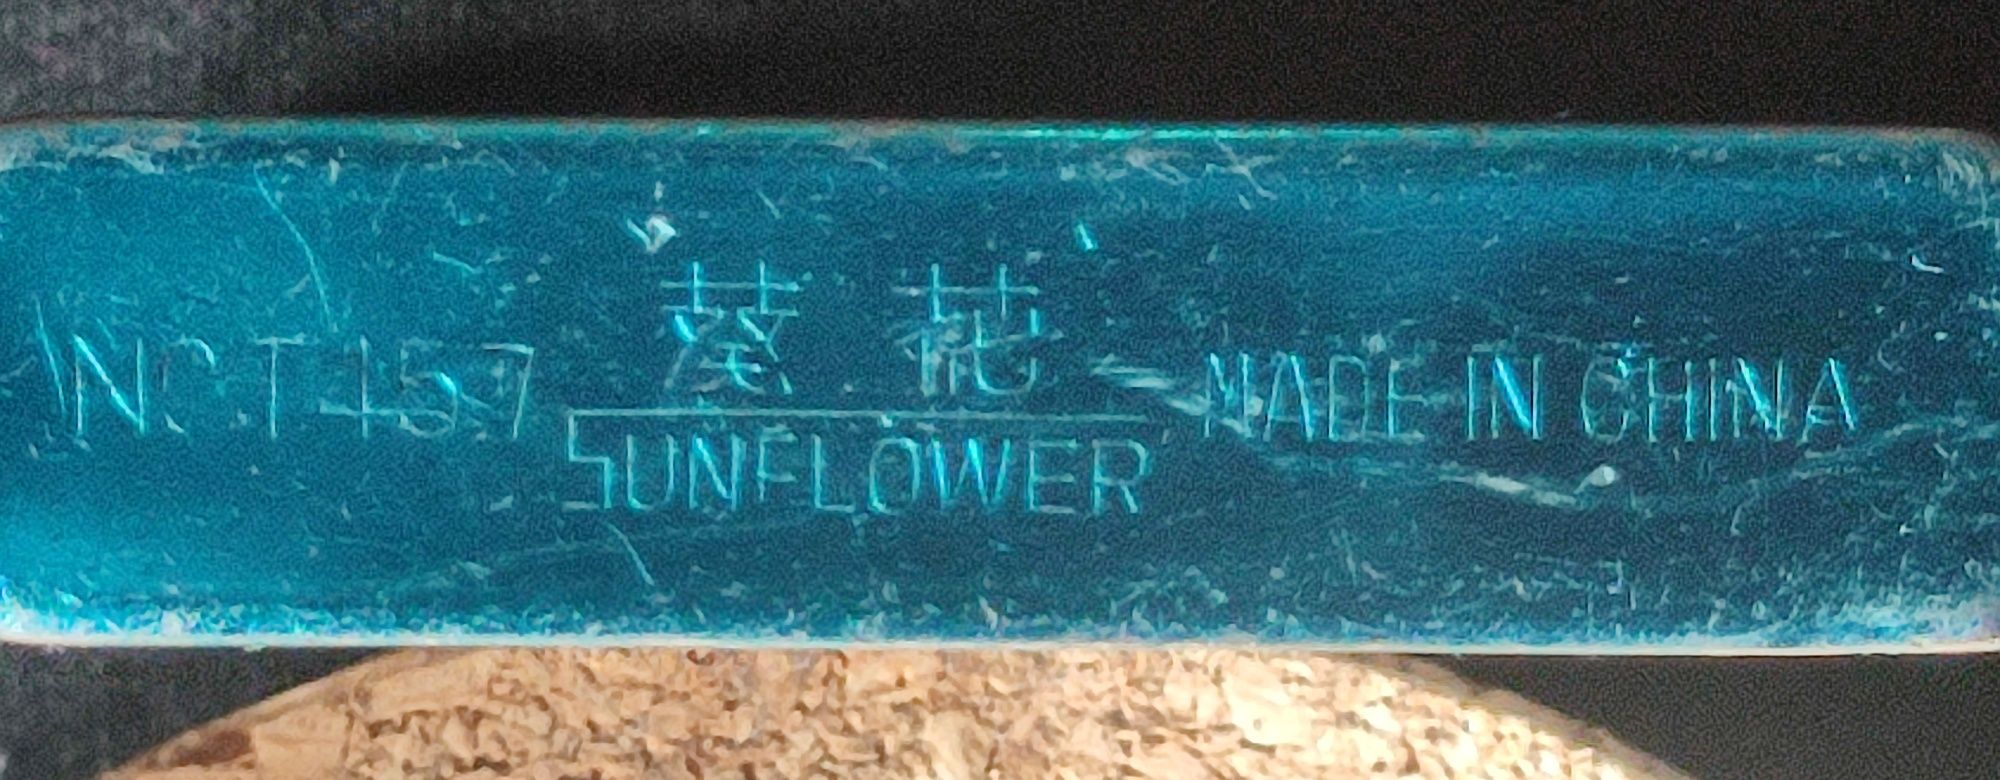 Brichete Sunflower originale de colecție (anul1960)